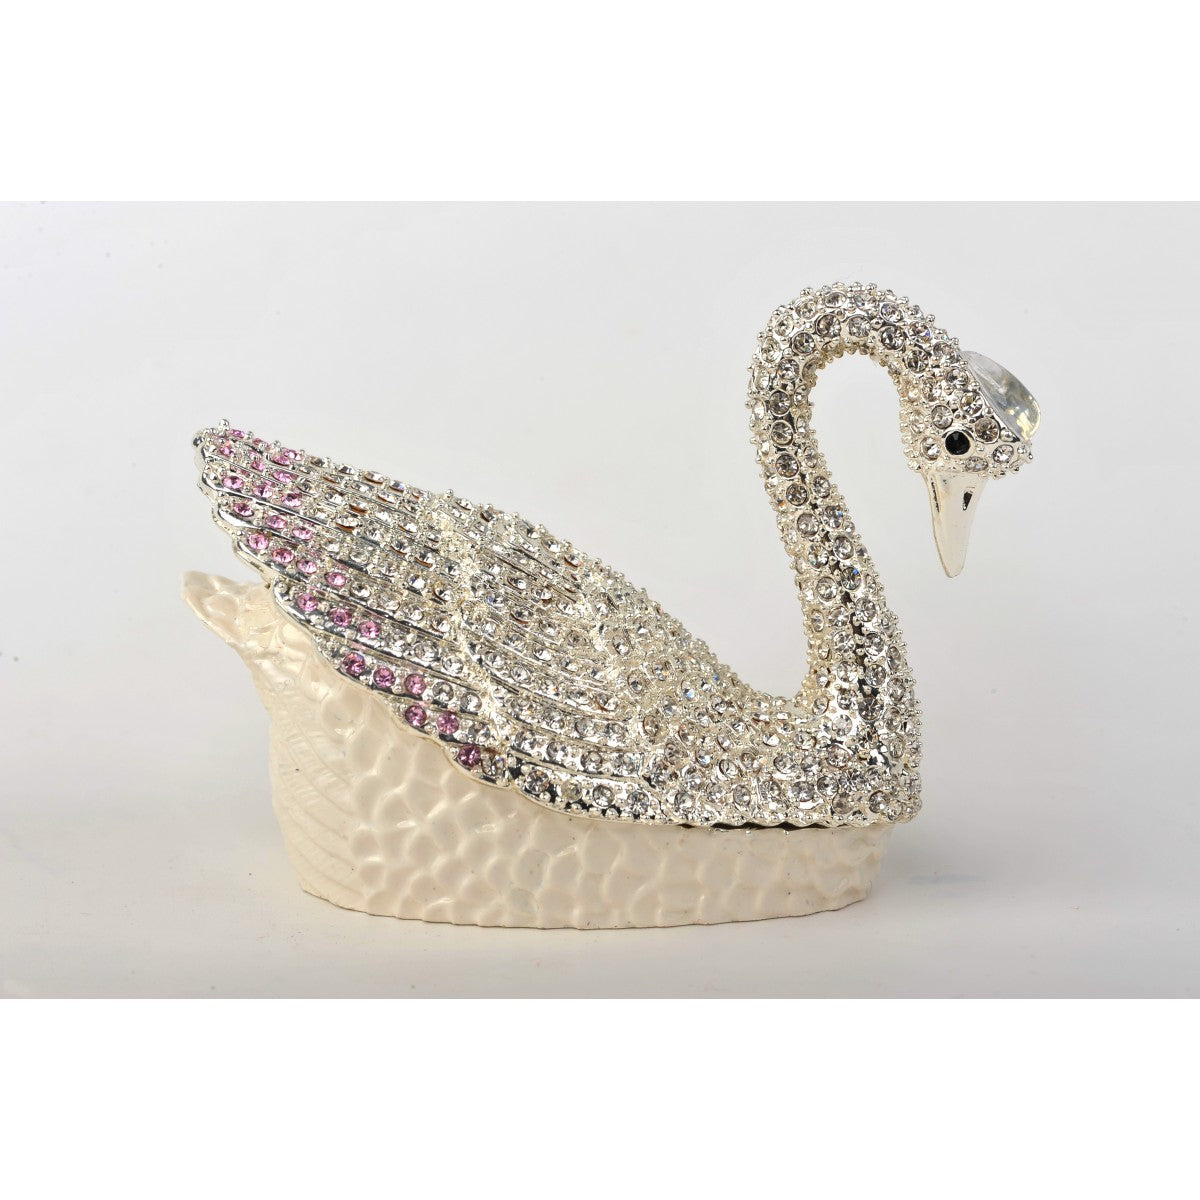 Silver swan by Keren Kopal